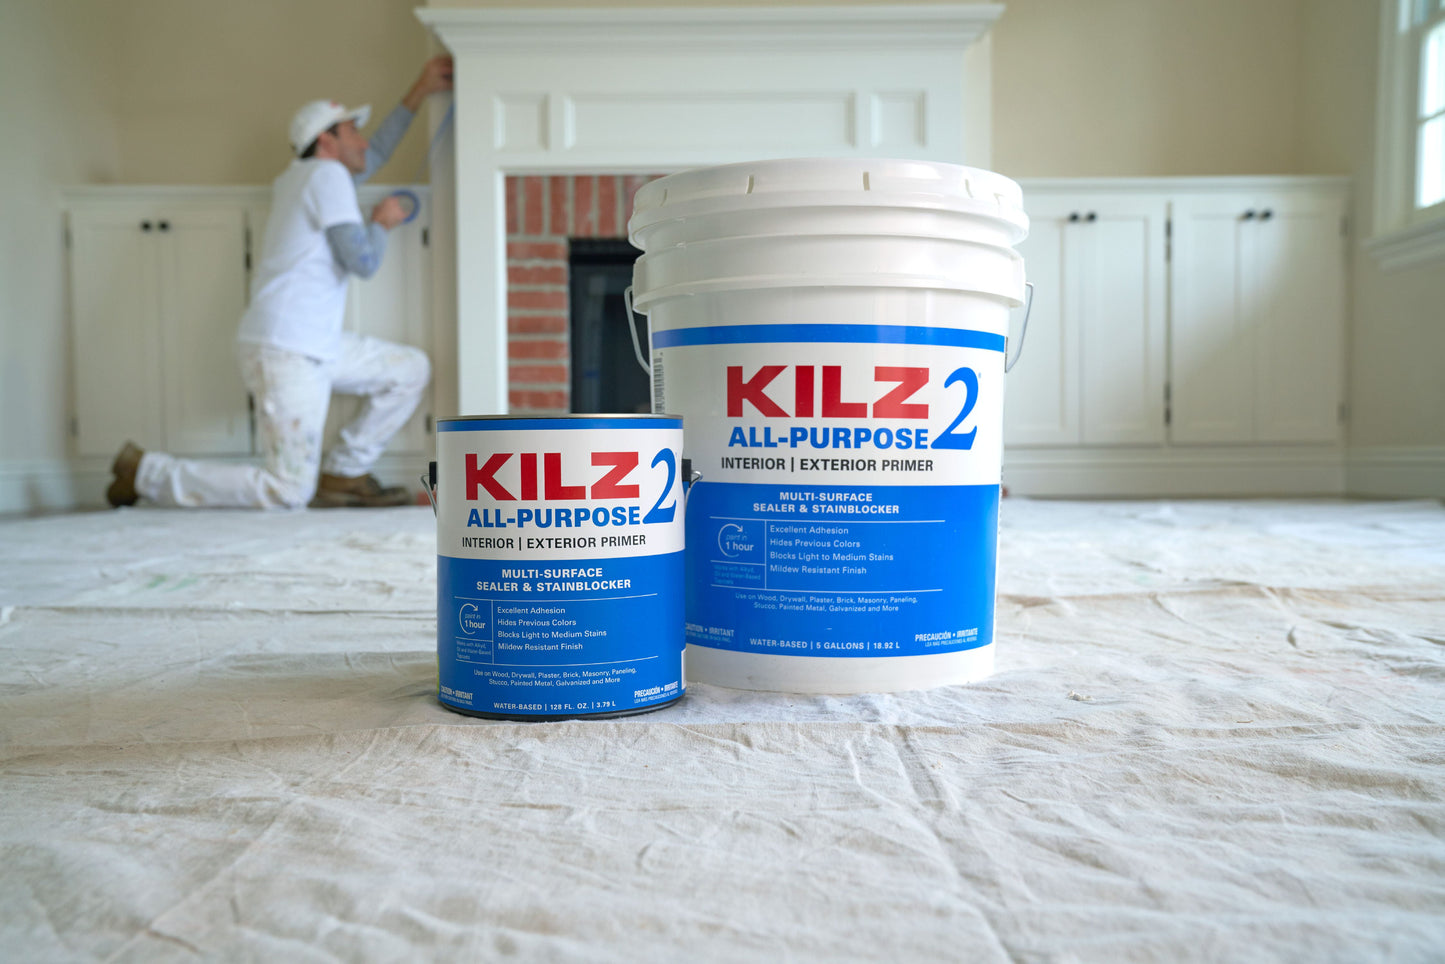 KILZ 2 All-Purpose Latex Primer, Interior/Exterior, 1 gallon